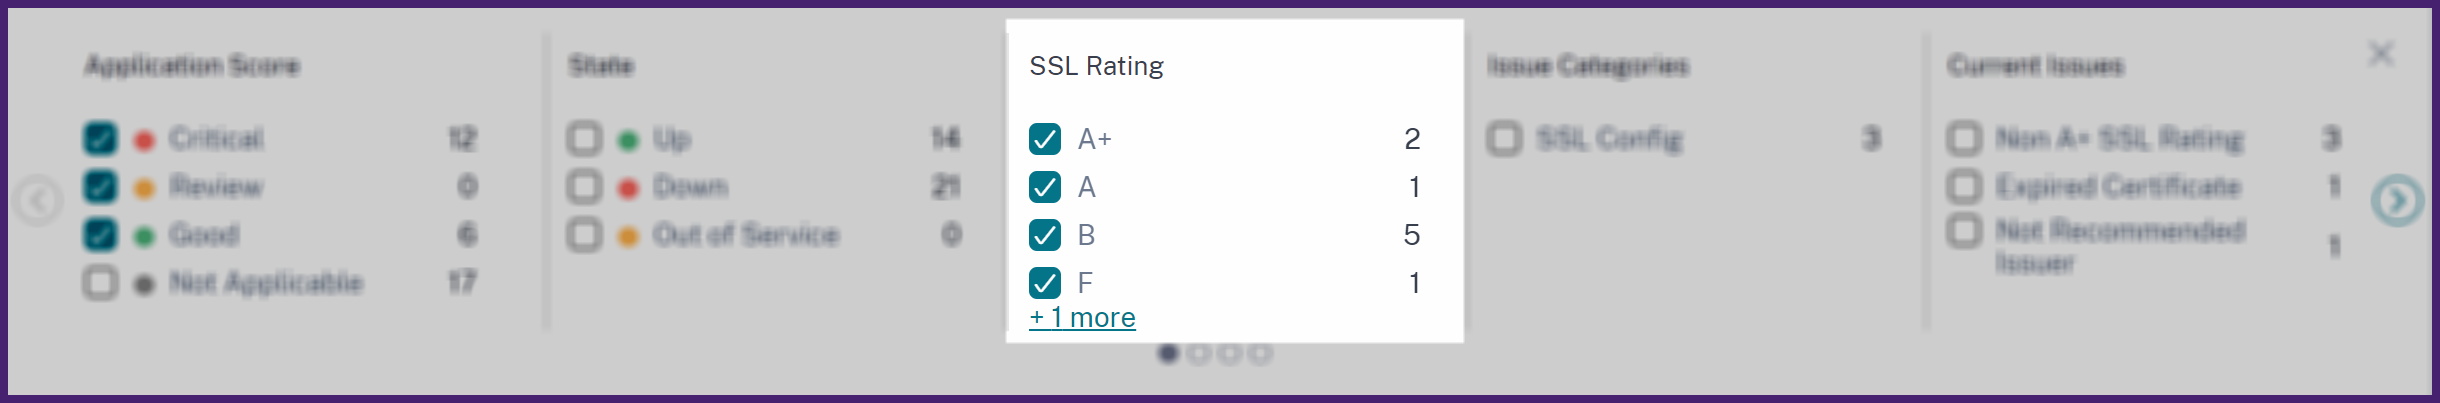 Filtrar aplicaciones por calificaciones de SSL